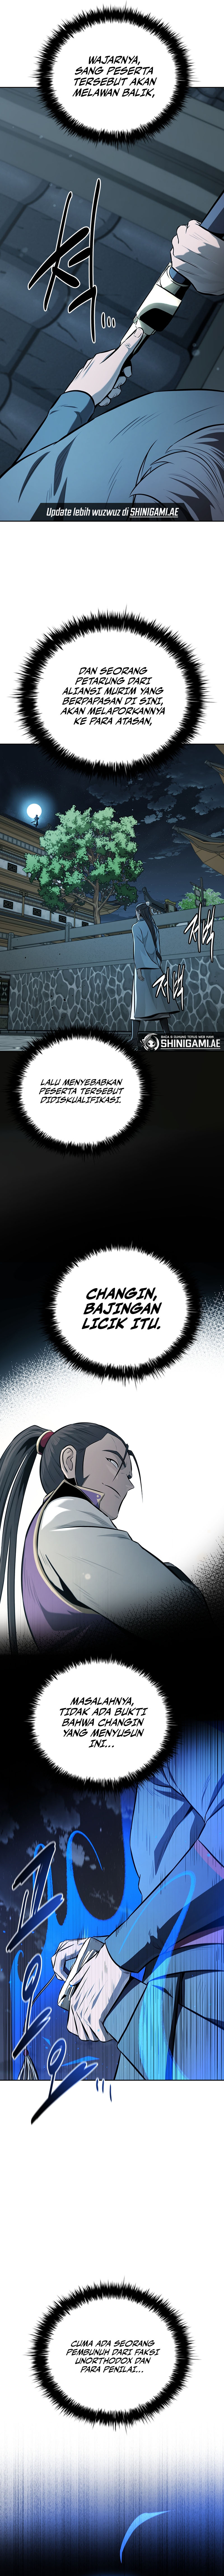 moon-shadow-sword-emperor Chapter 78